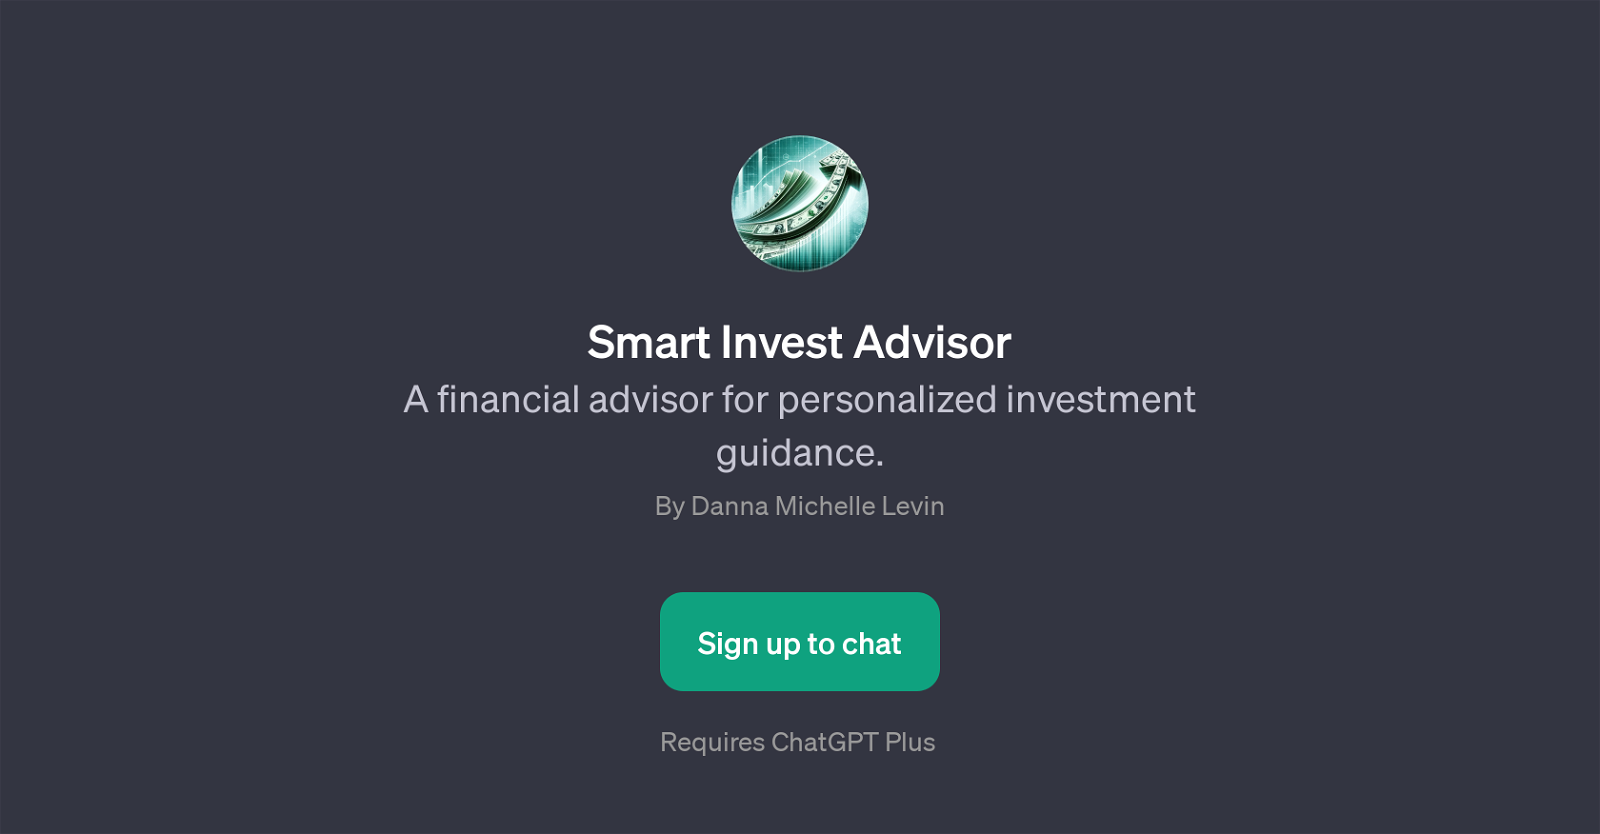 Smart Invest Advisor website